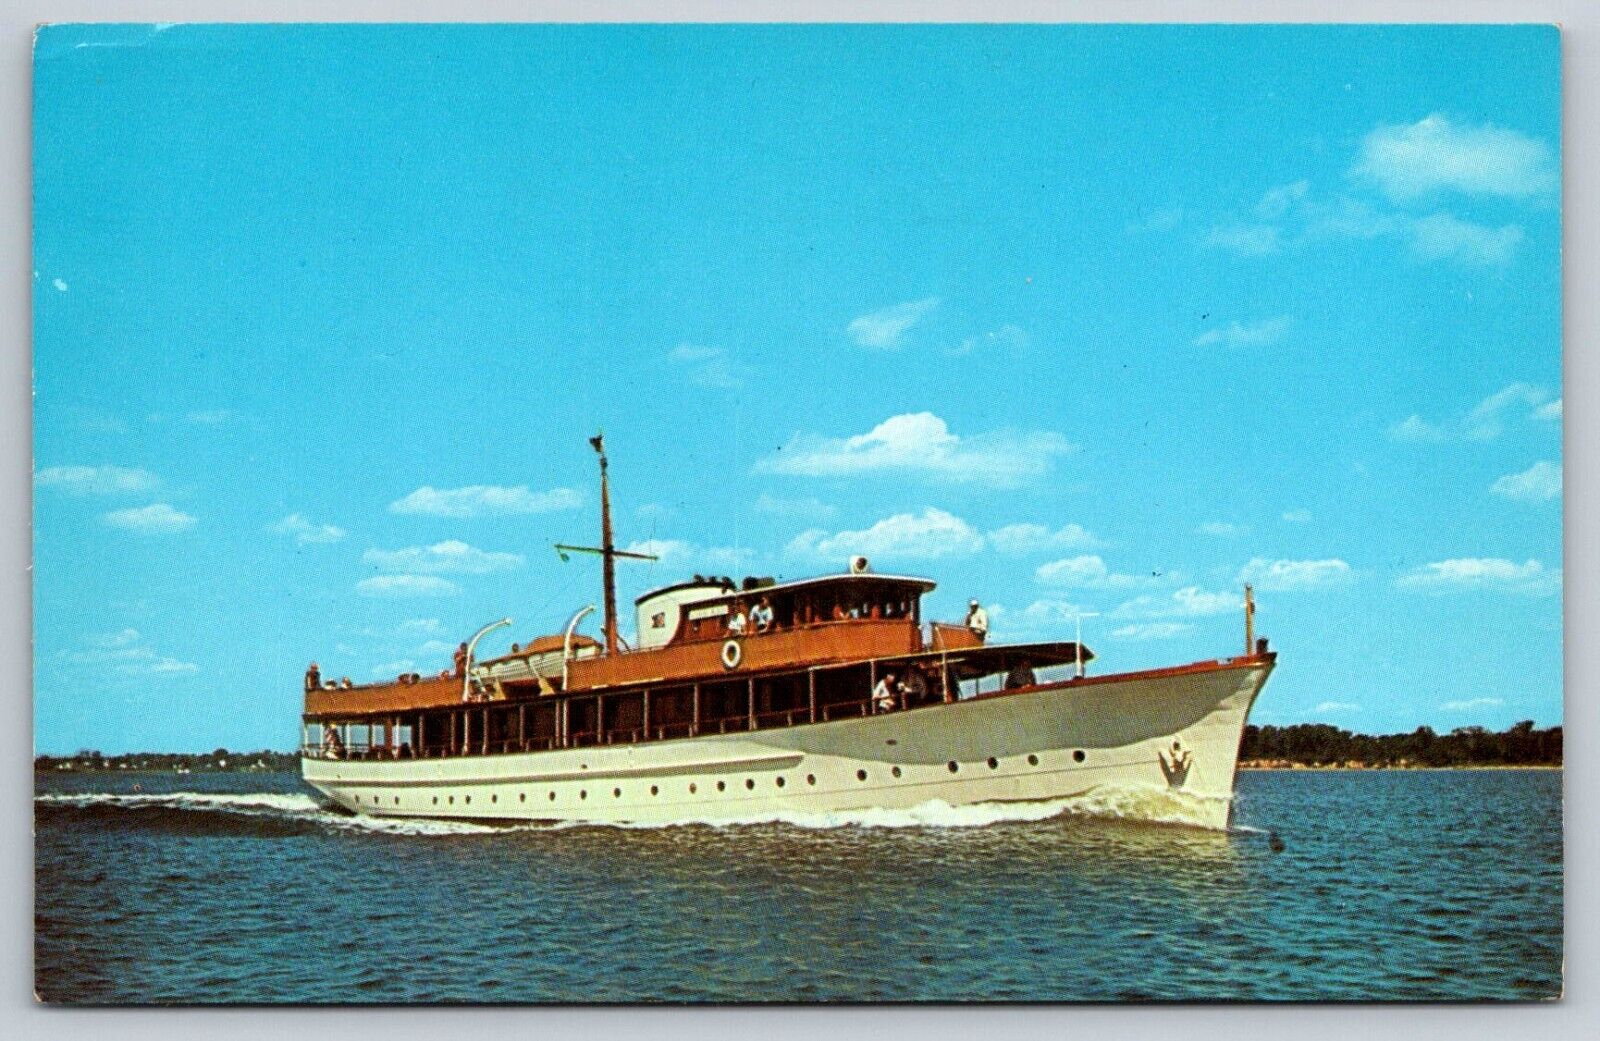 1963 127 FT Yacht Miss Ann E A Stephens Chesapeake Club Ship Cruise Postcard